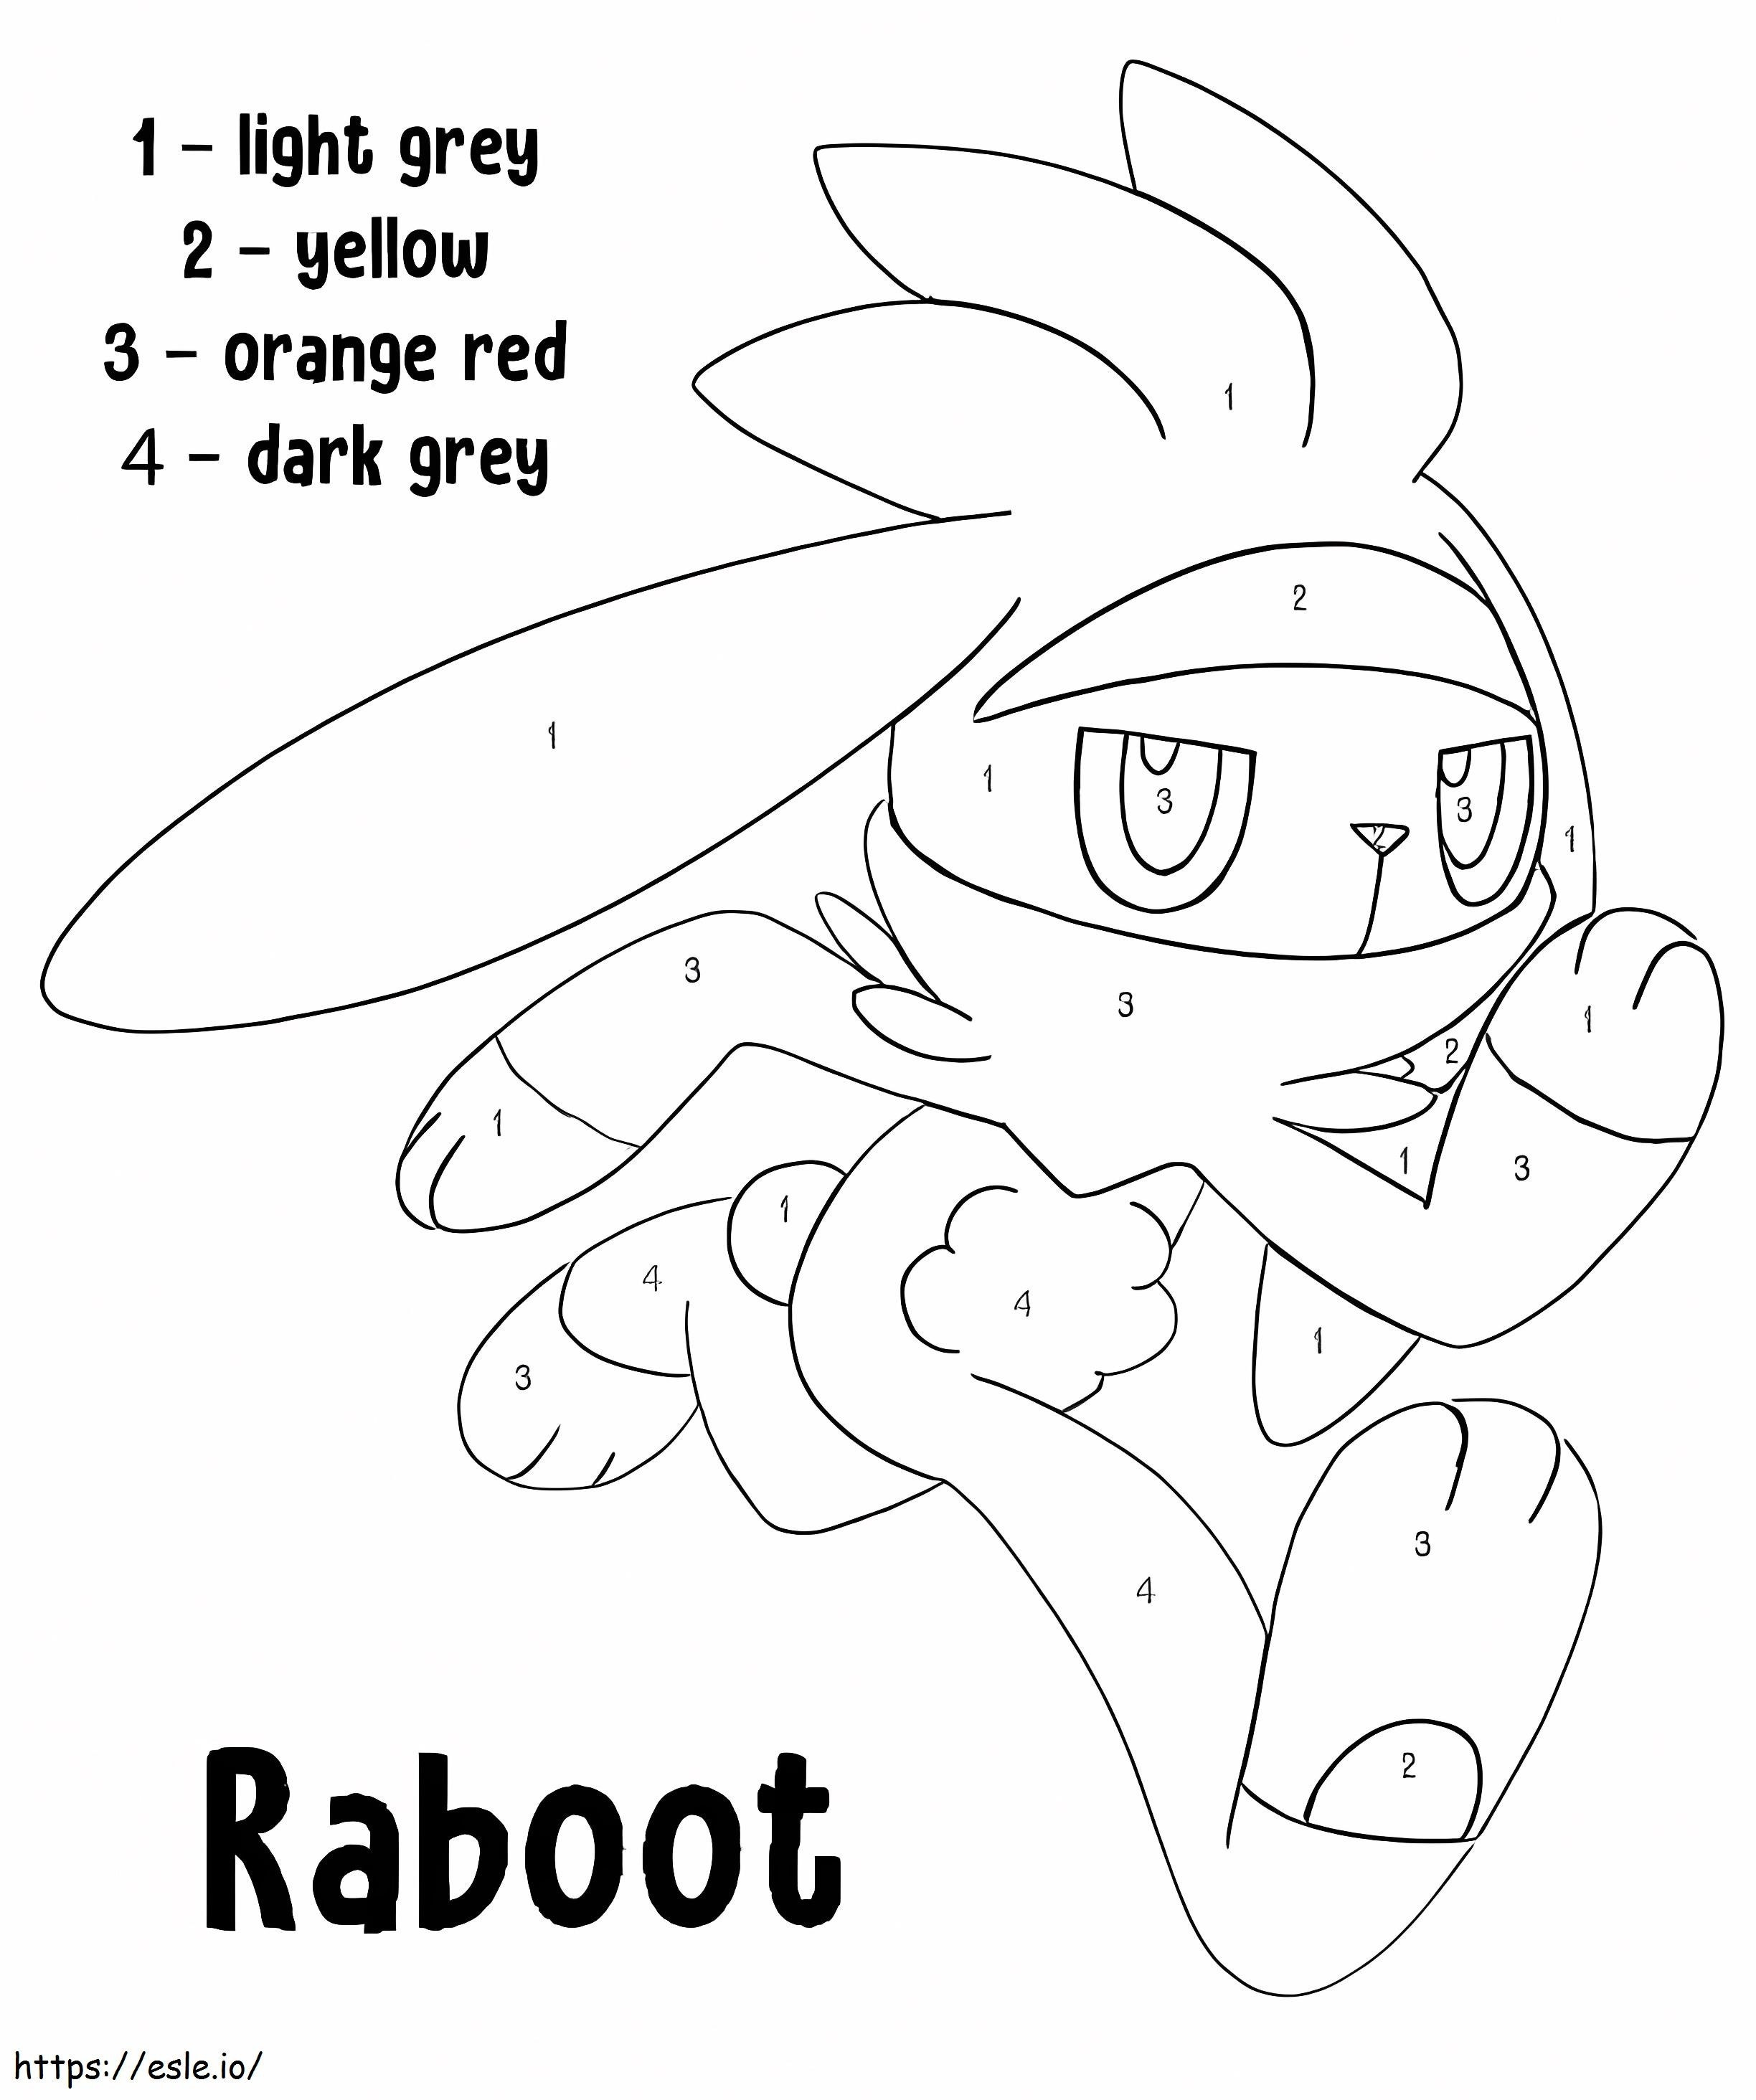 Coloriage Raboot Pokemon Couleur Par Numéro à imprimer dessin